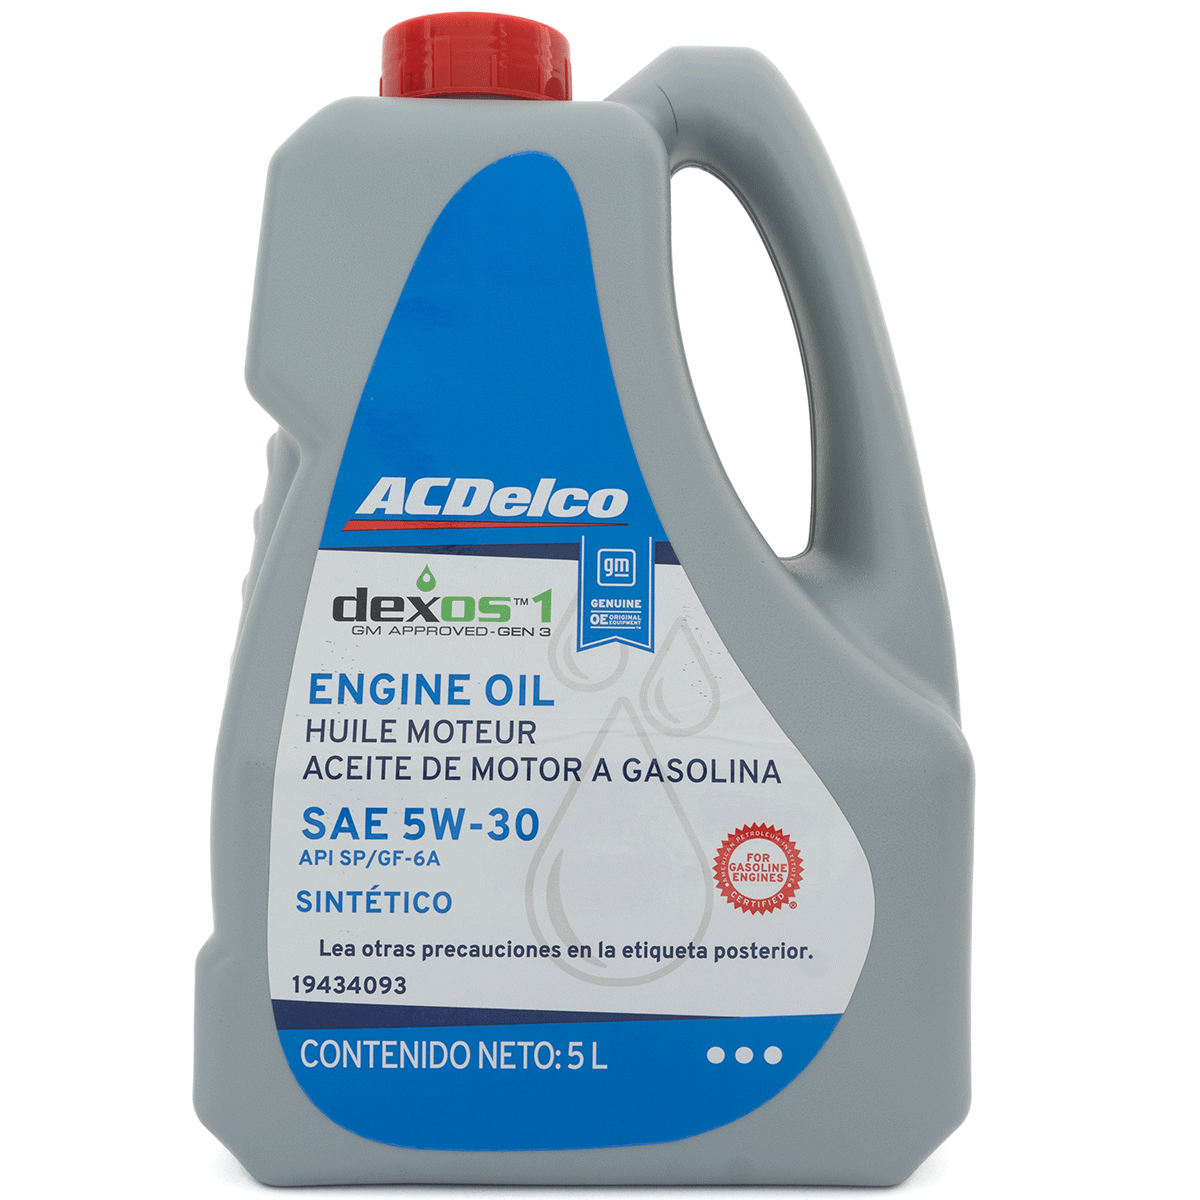 Garrafa de 5 Litros Aceite ACDelco Dexos Multigrado Sintético SAE 5W-30